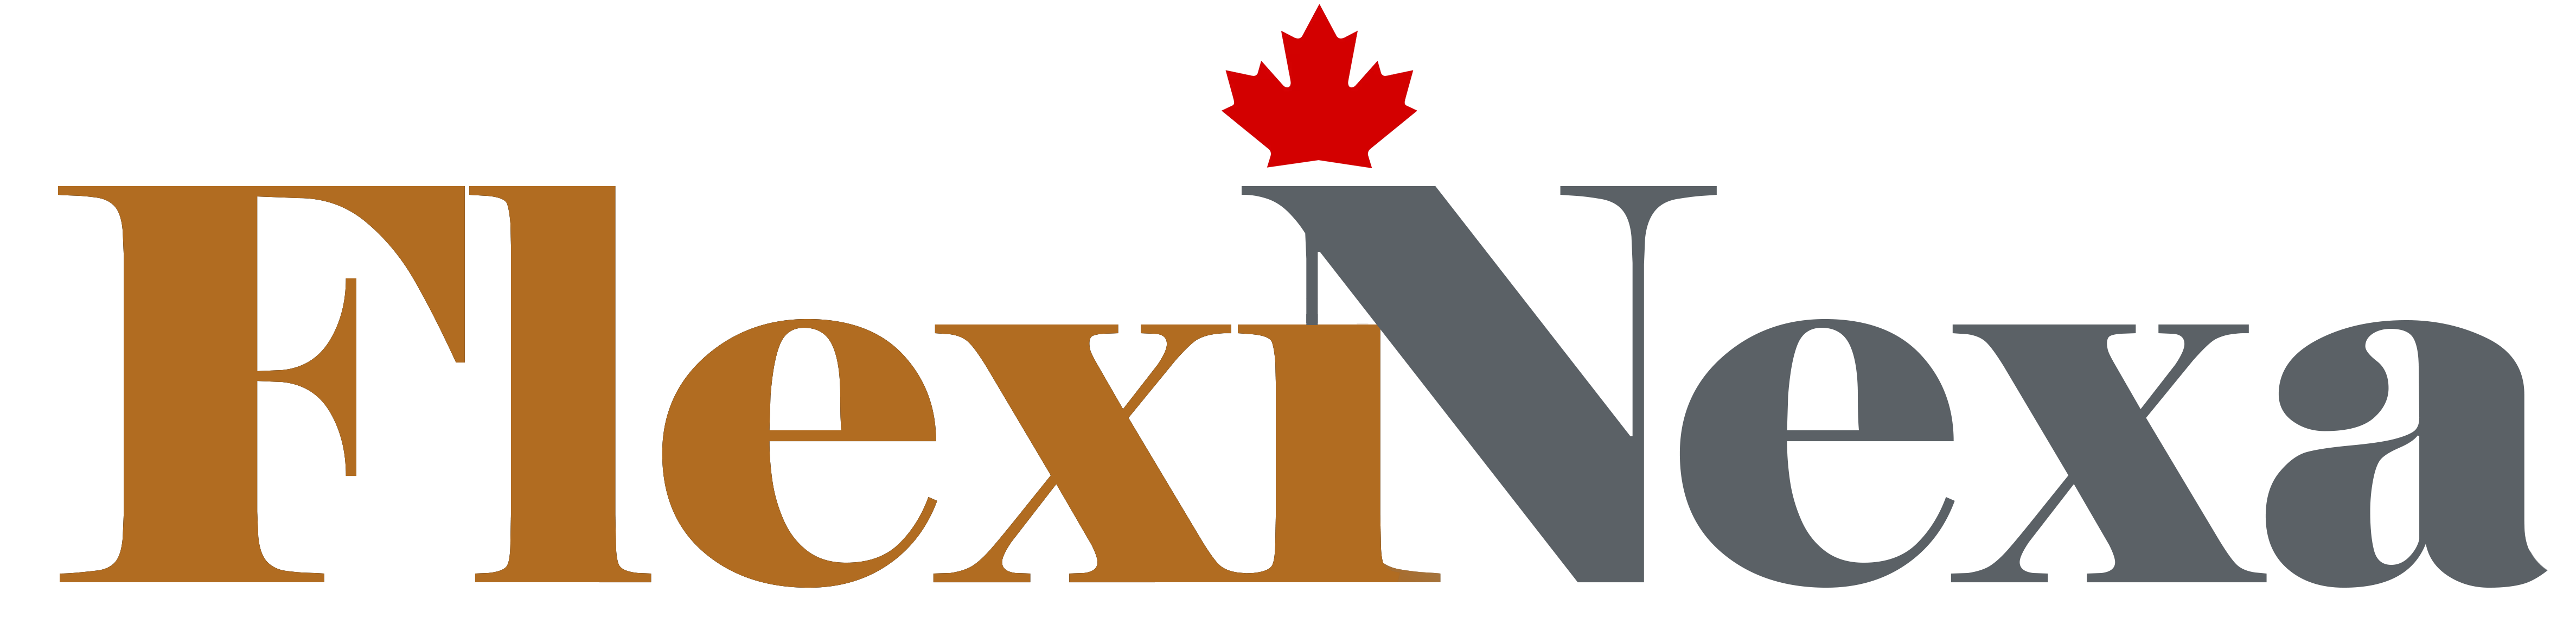 Flexinexa Logo